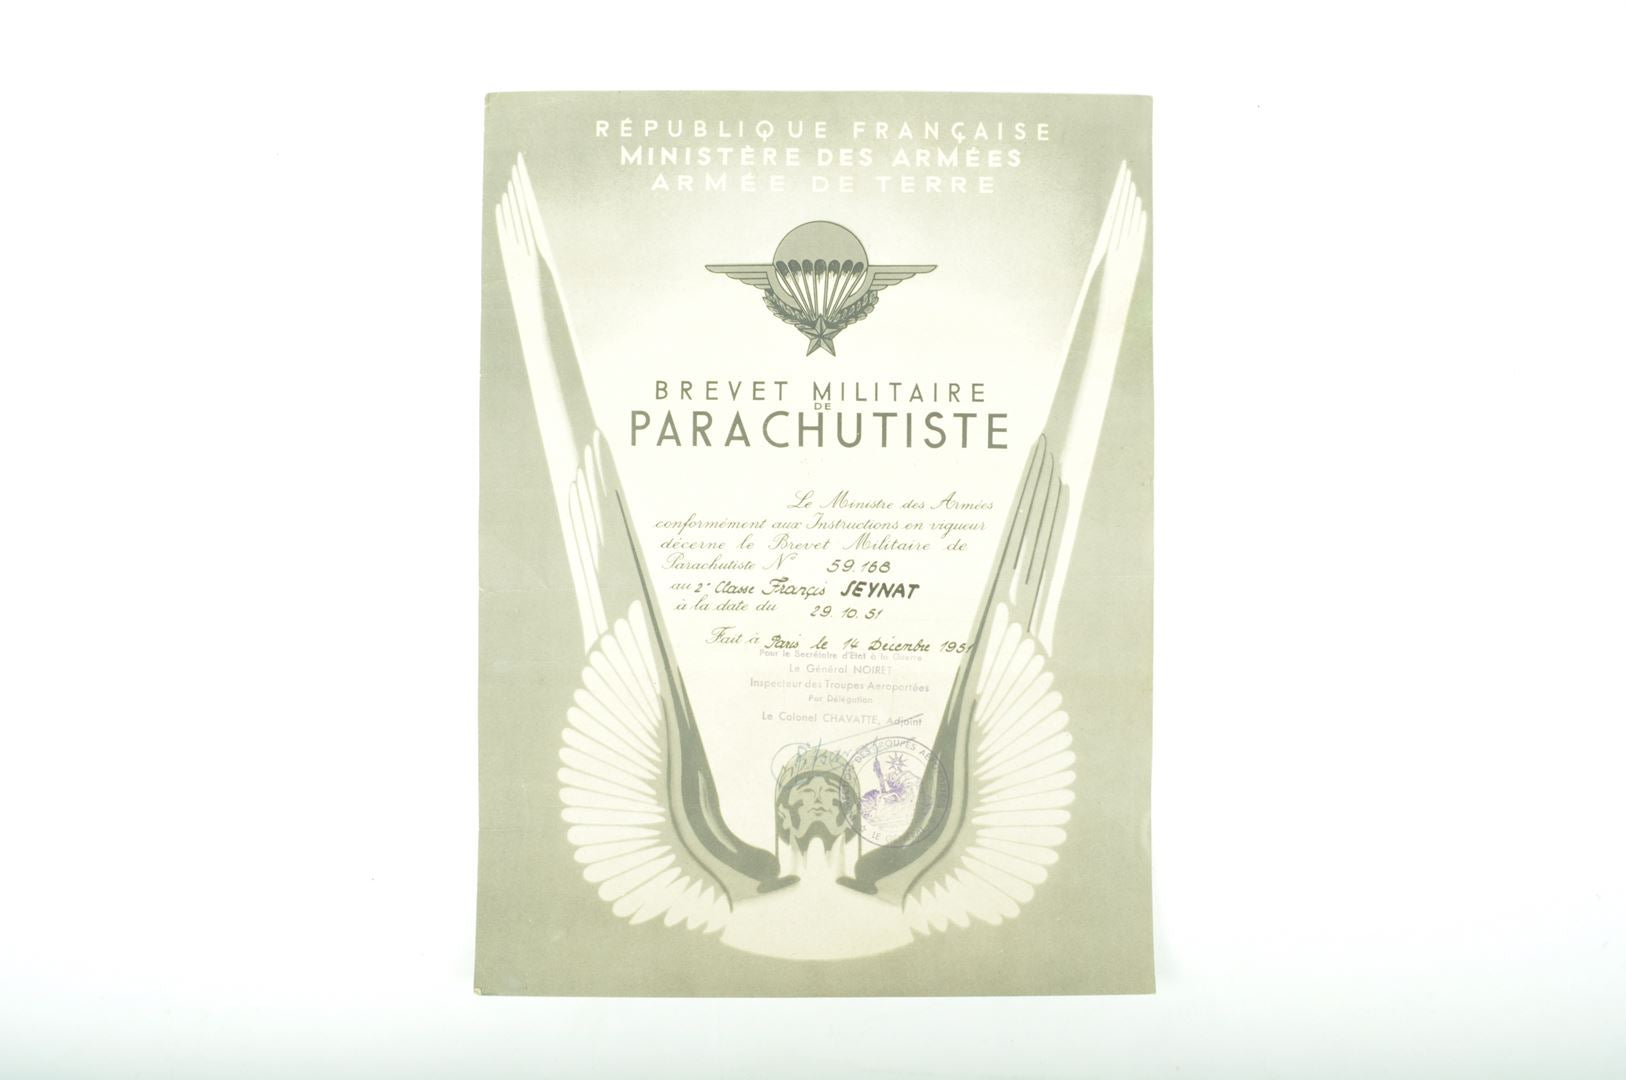 Brevet Parachutiste 1951